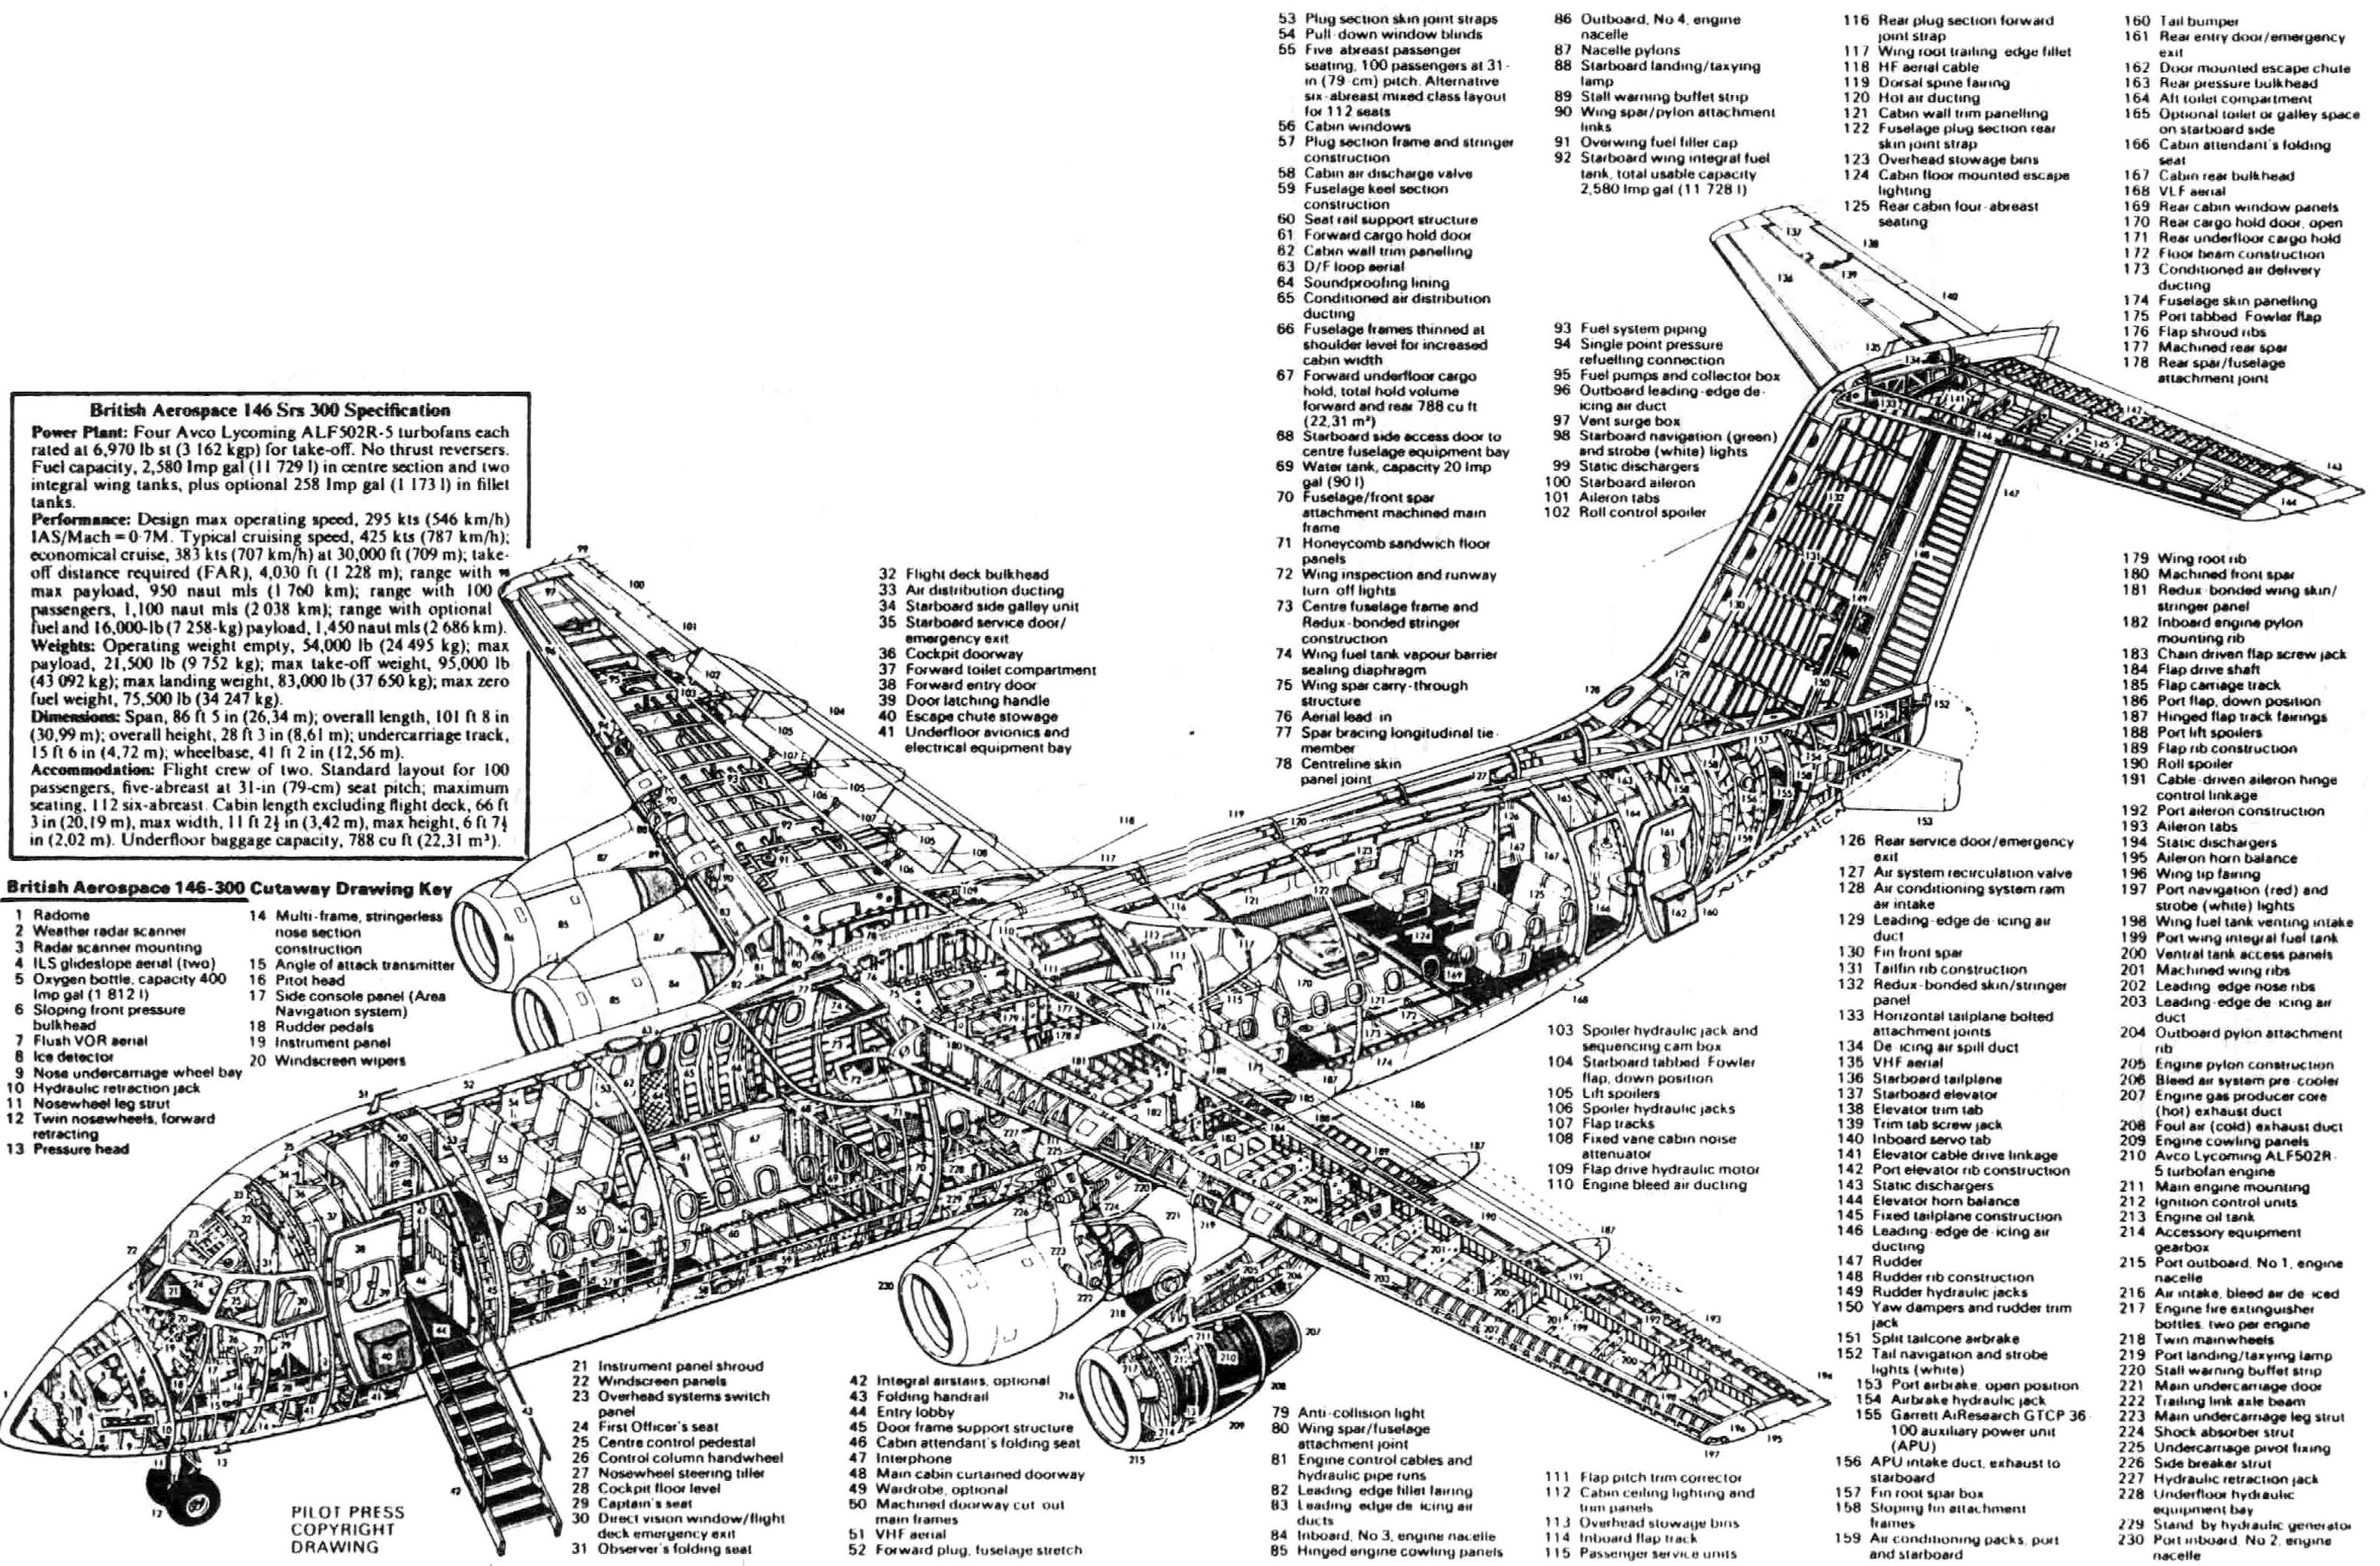 bae146300 | Aircraft of World War II - WW2Aircraft.net Forums